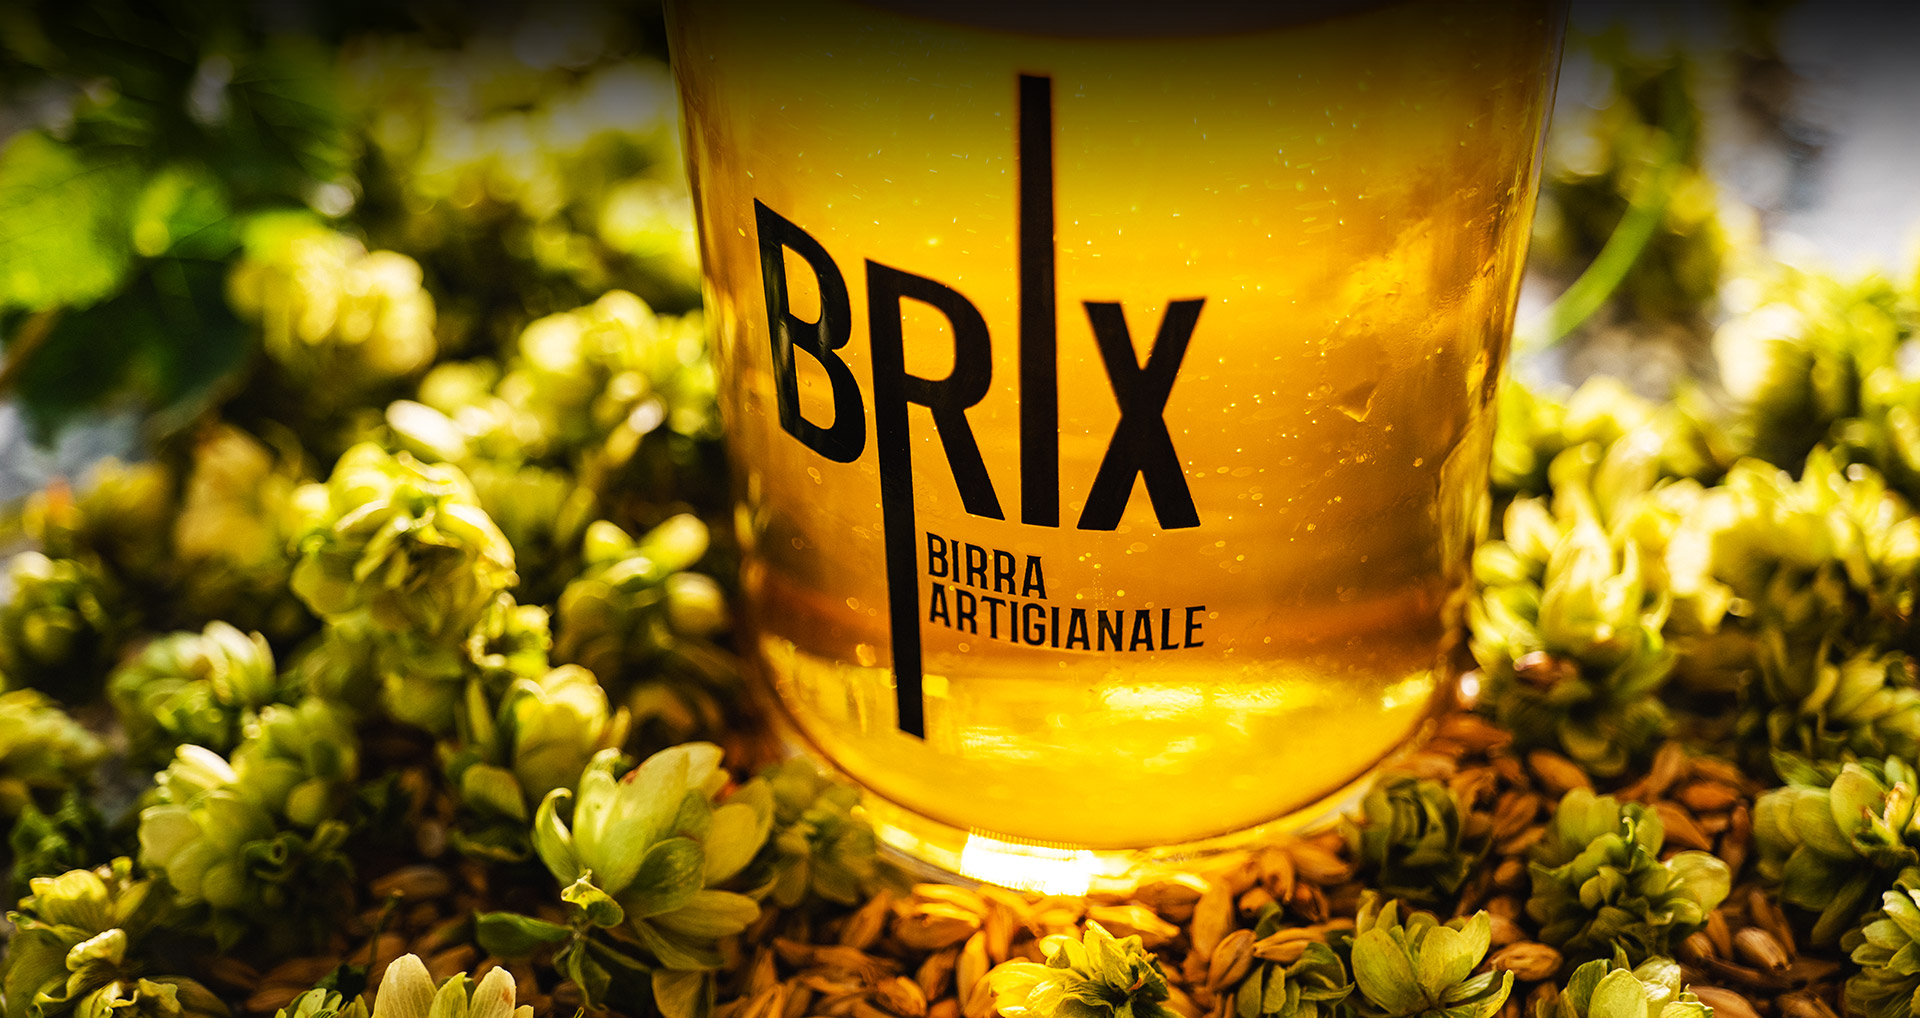 Brix Brew Pub - Collegno